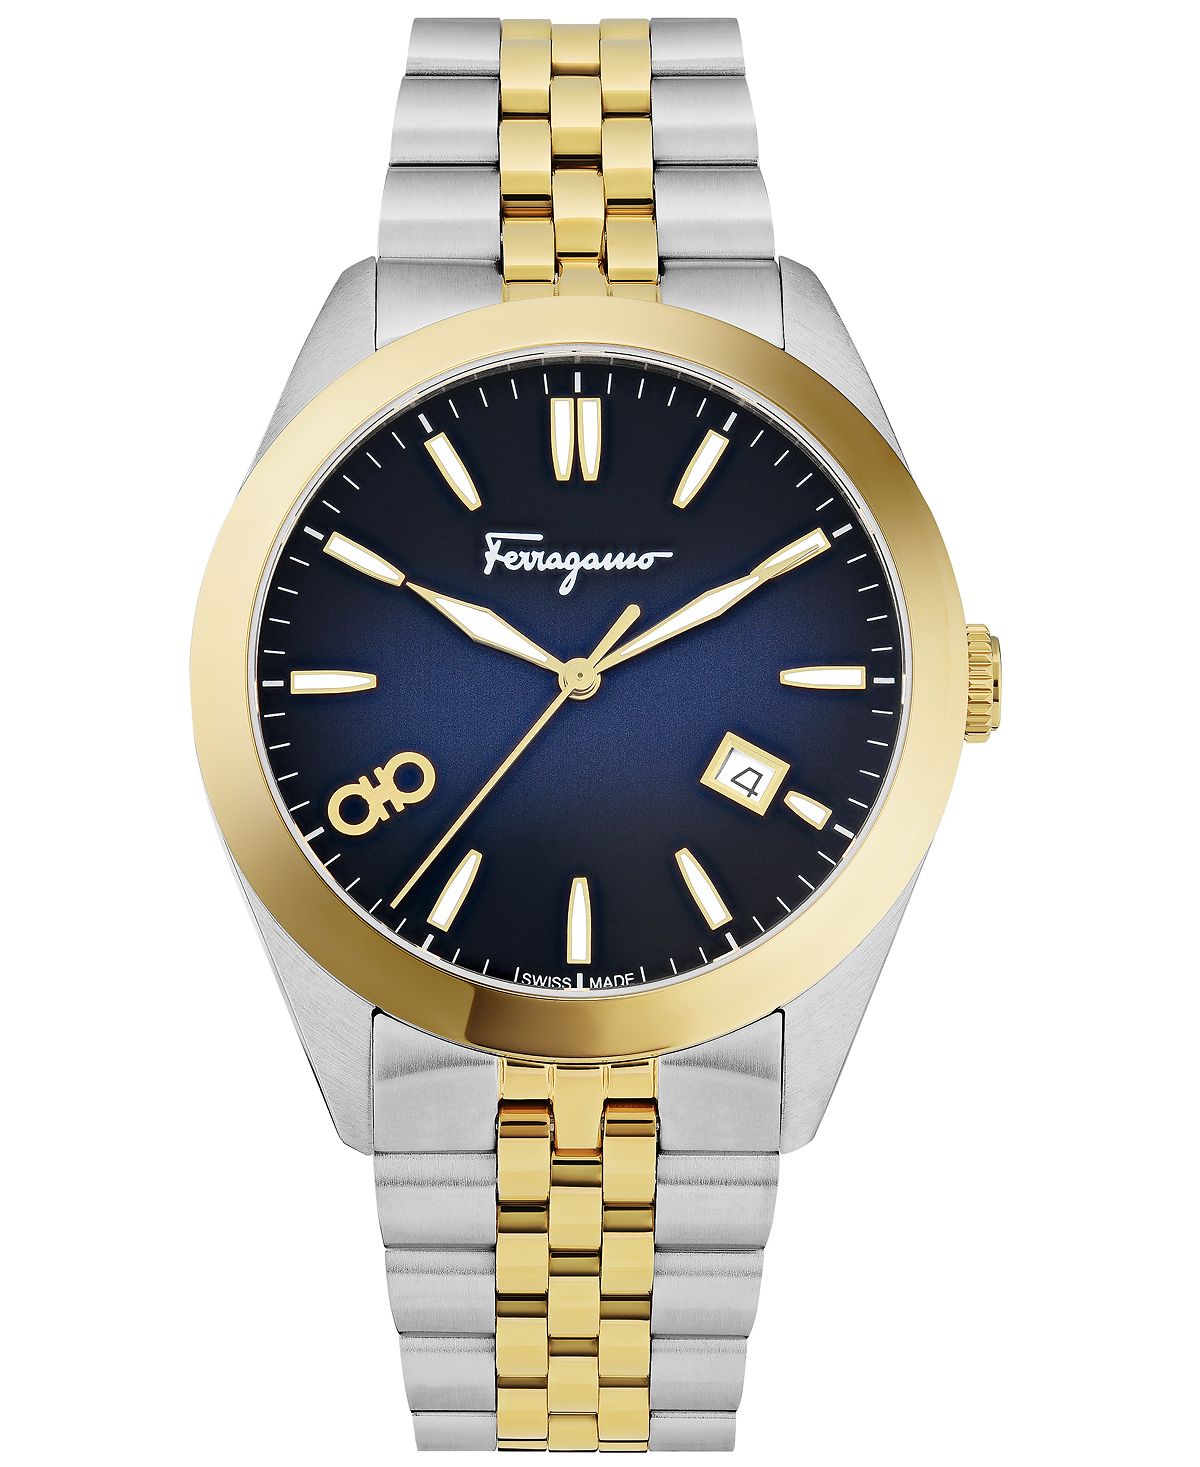 Мужские швейцарские классические двухцветные часы-браслет из нержавеющей стали, 42 мм Salvatore Ferragamo seiko 5 21 jewels automatic gold tone stainless steel ladies watch symf92j1